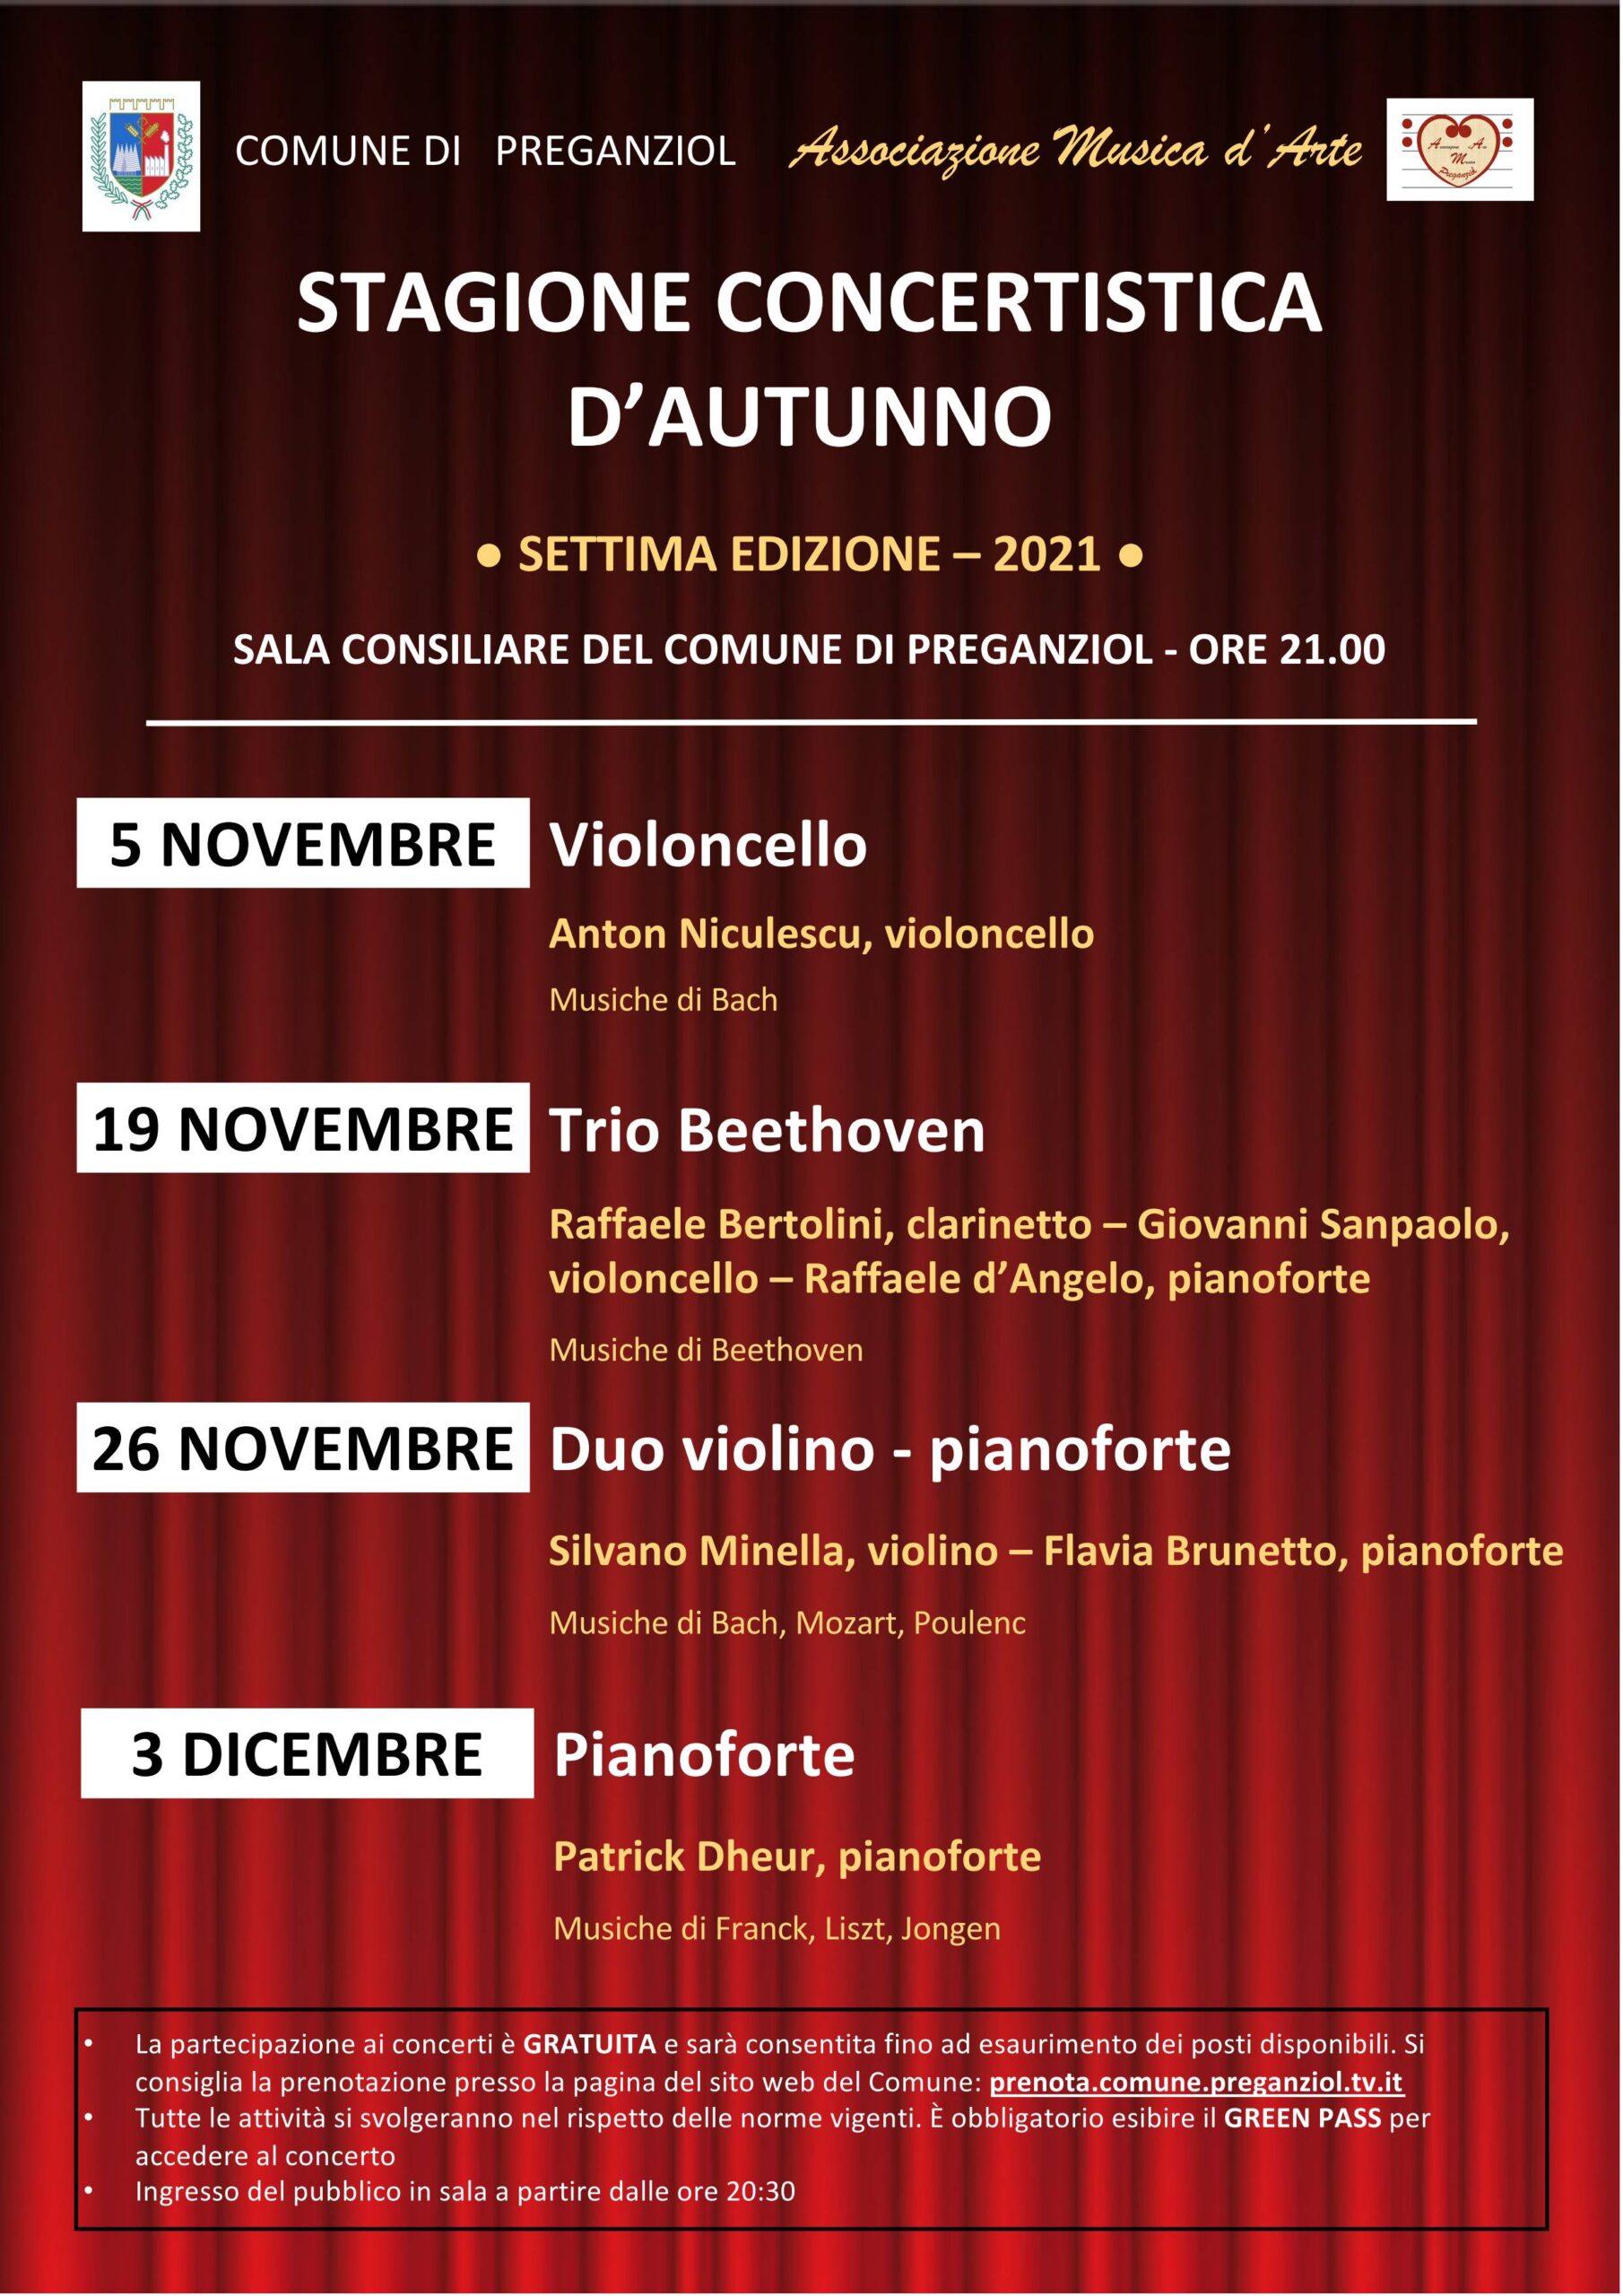 Stagione concertistica d’autunno: Venerdì 3 dicembre Pianoforte